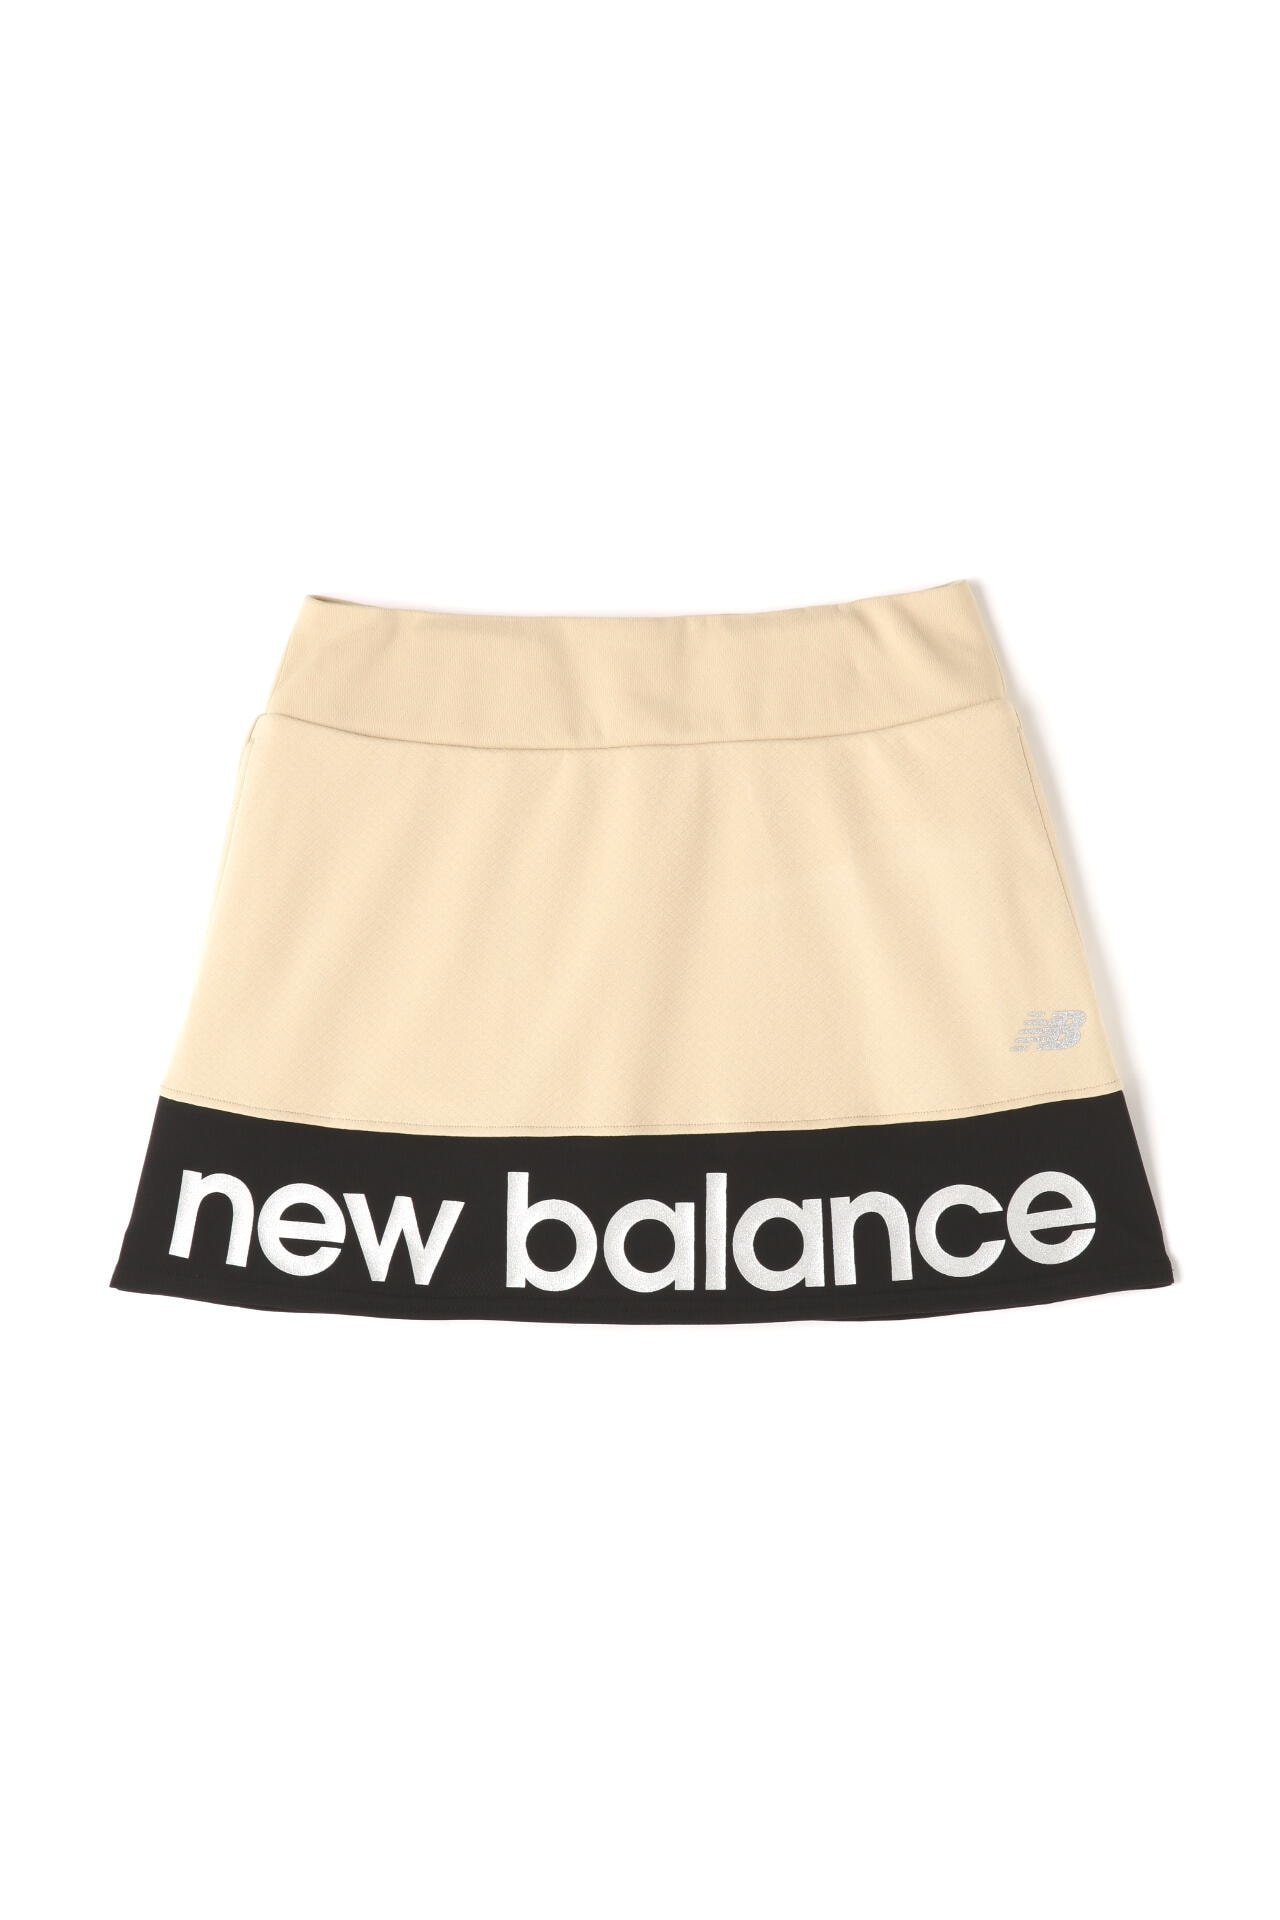 new balance golf】ラメロゴ インナーパンツ付き ジャージー スカート 